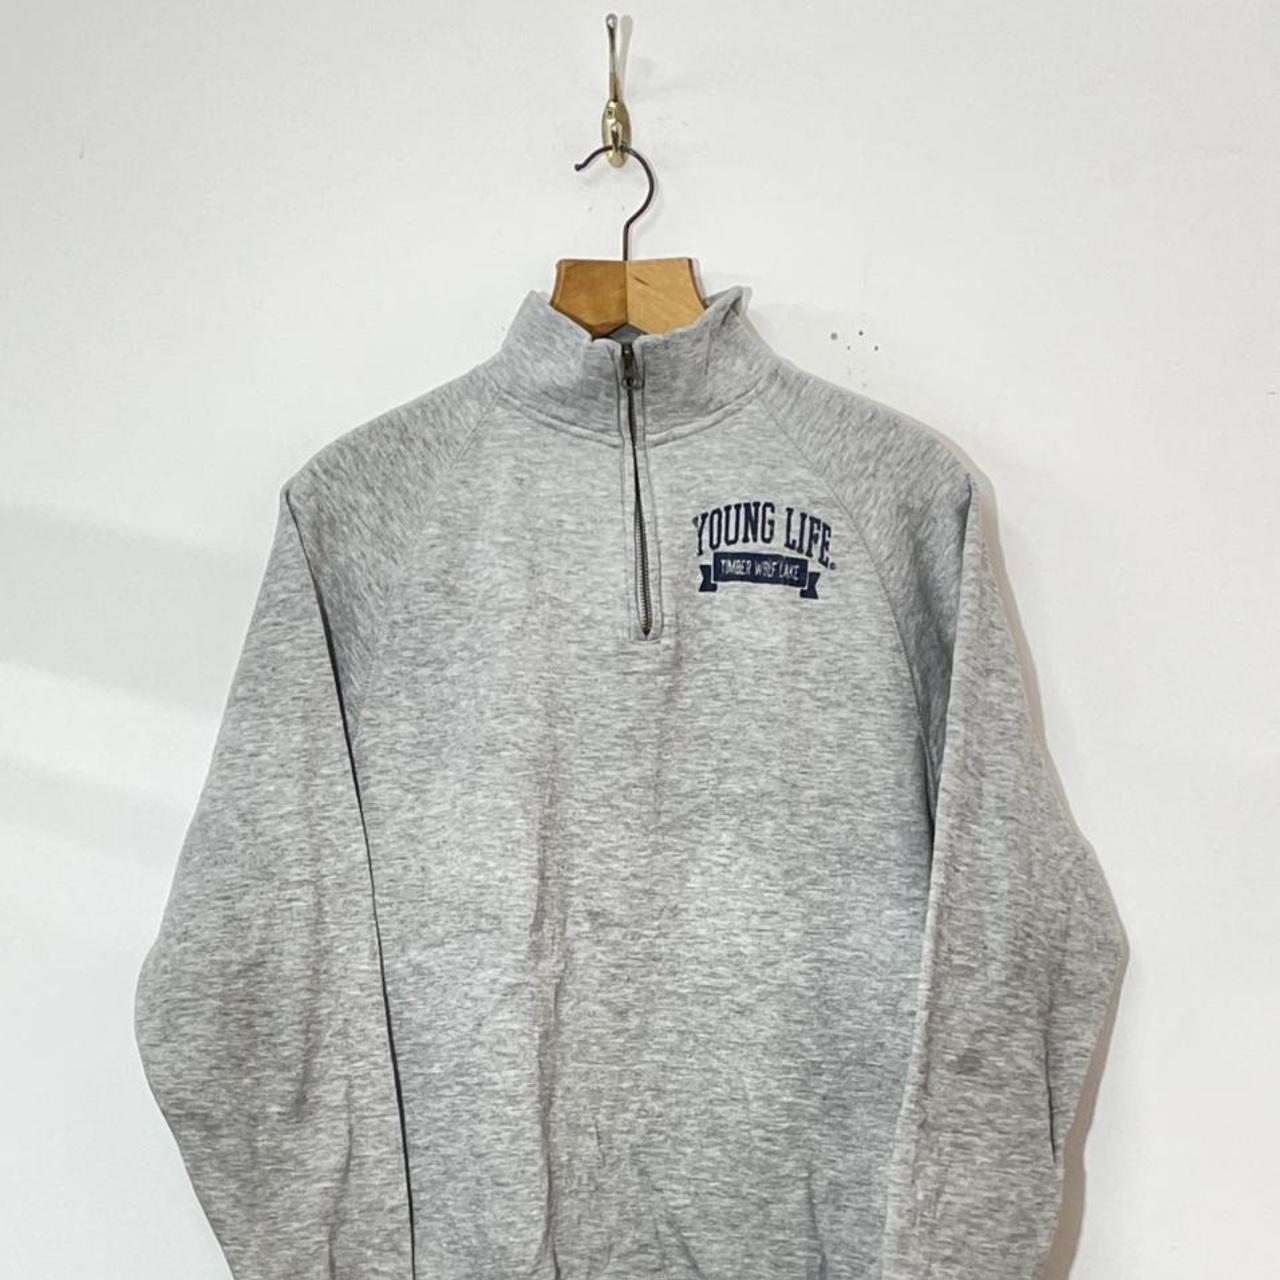 Ouray Grey Quarter Zip Sweatshirt 🔥 Size - S Pit... - Depop